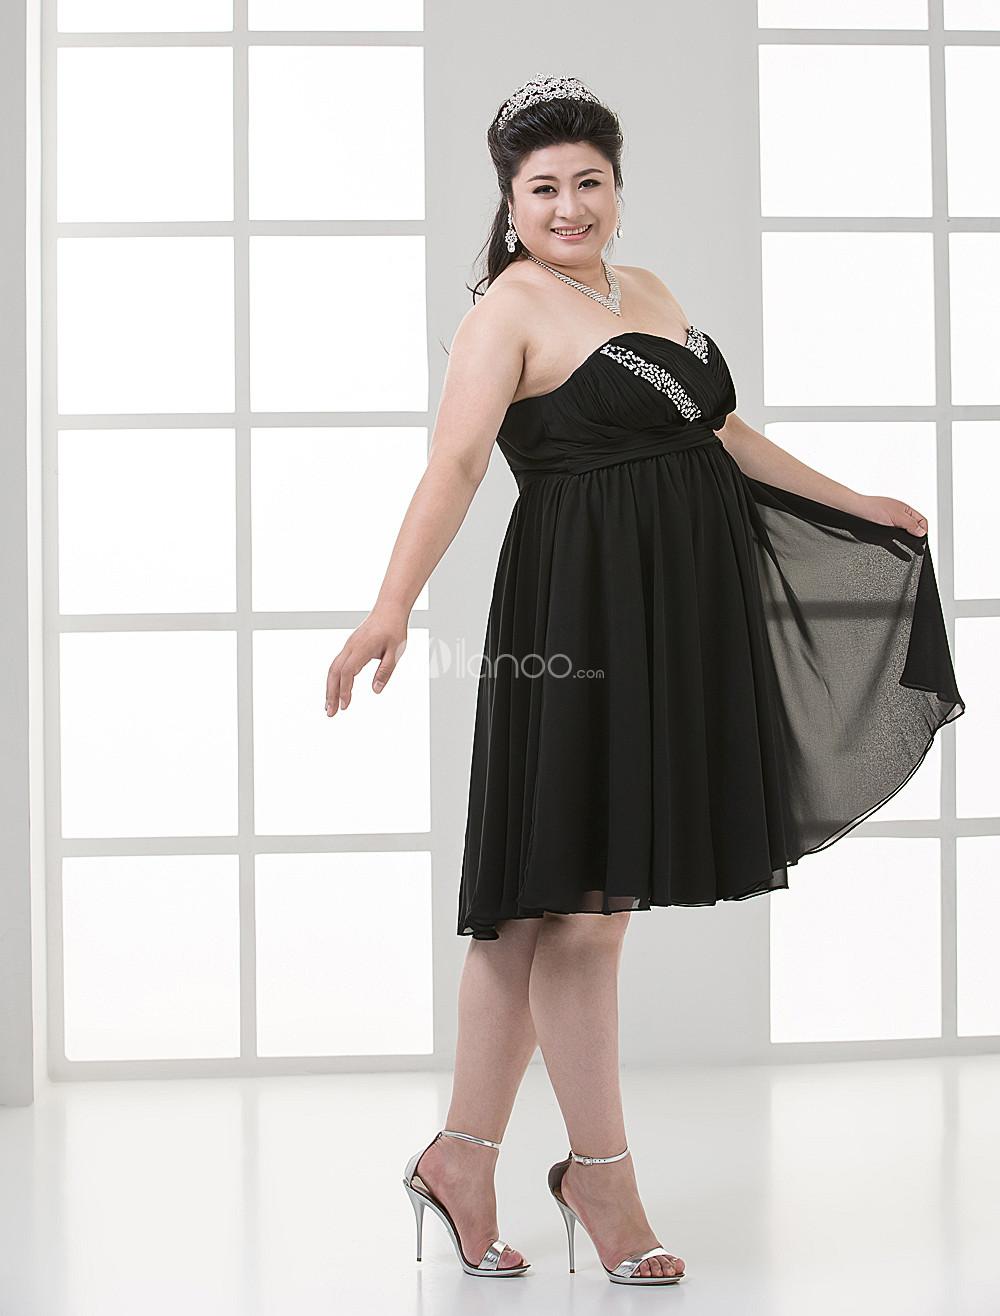 Foto Imperio cintura negro lentejuelas neto amor Plus vestido de fiesta tamaño femenino foto 303889